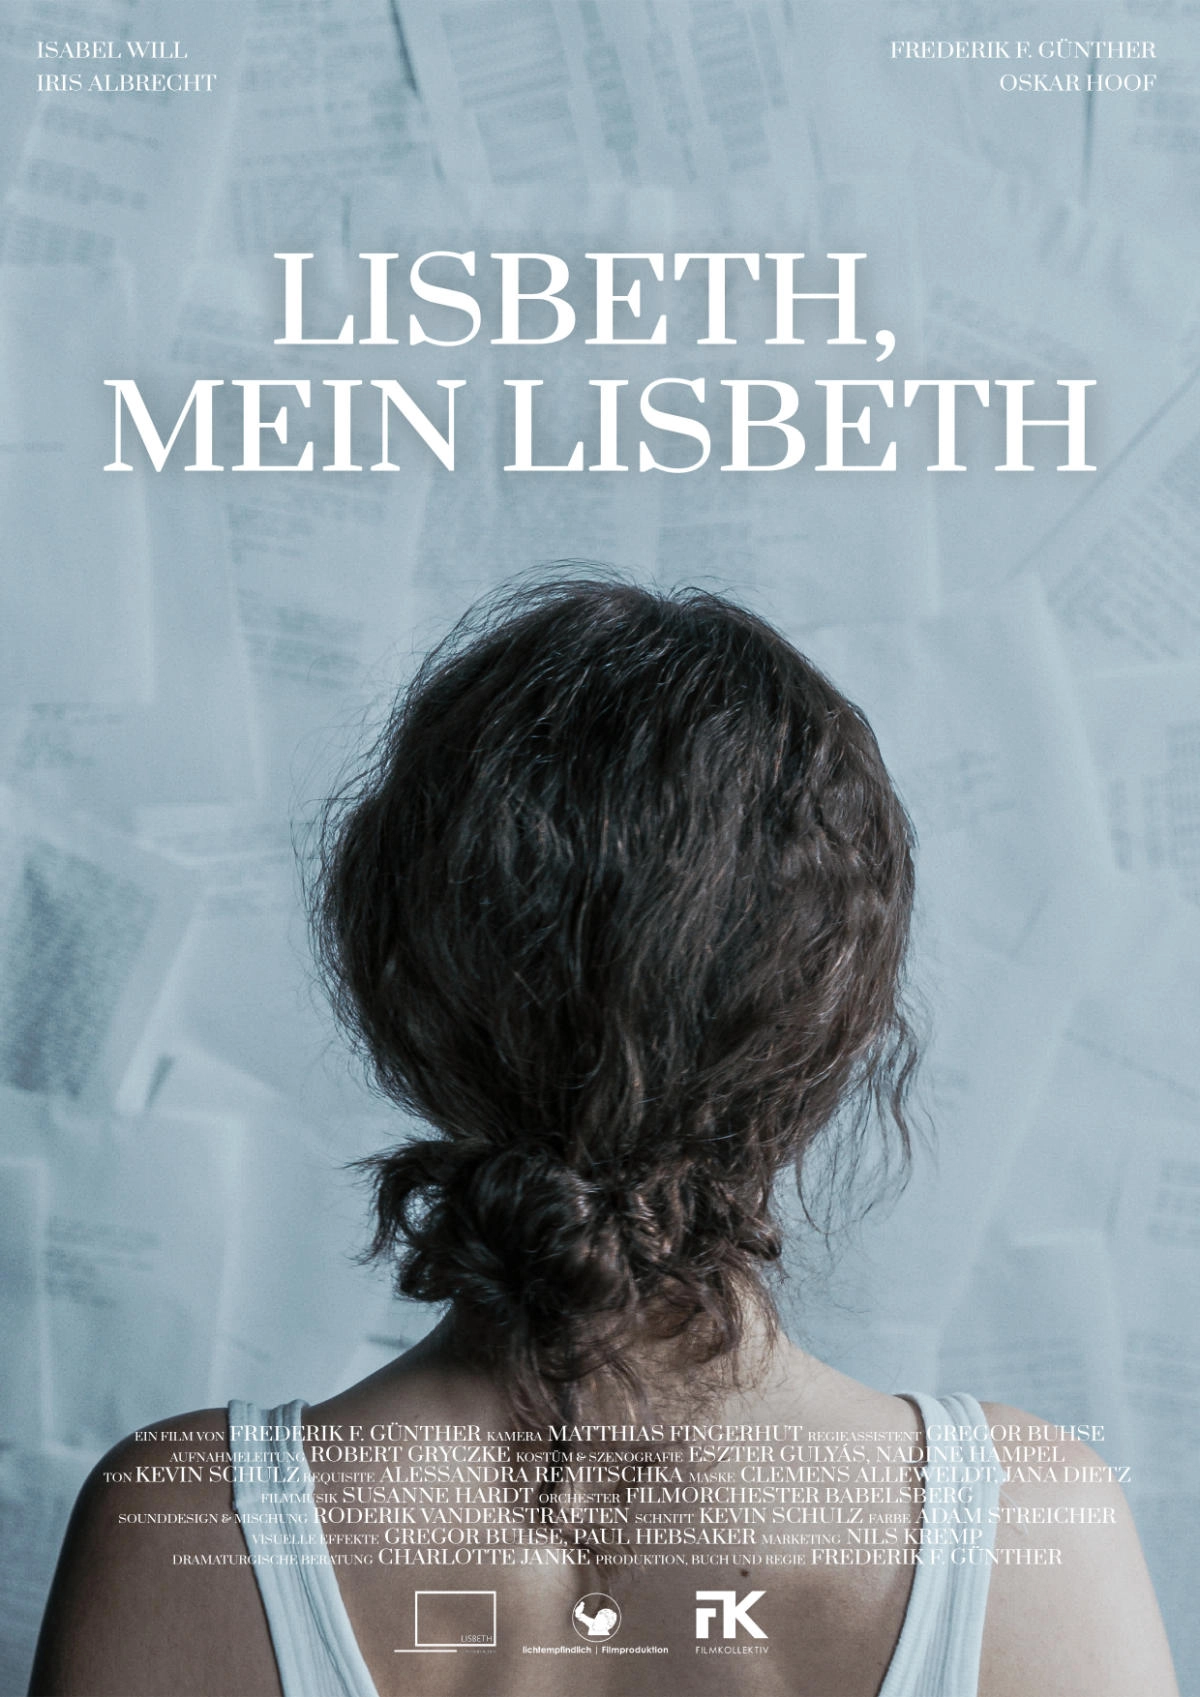 Lisbeth, my Lisbeth